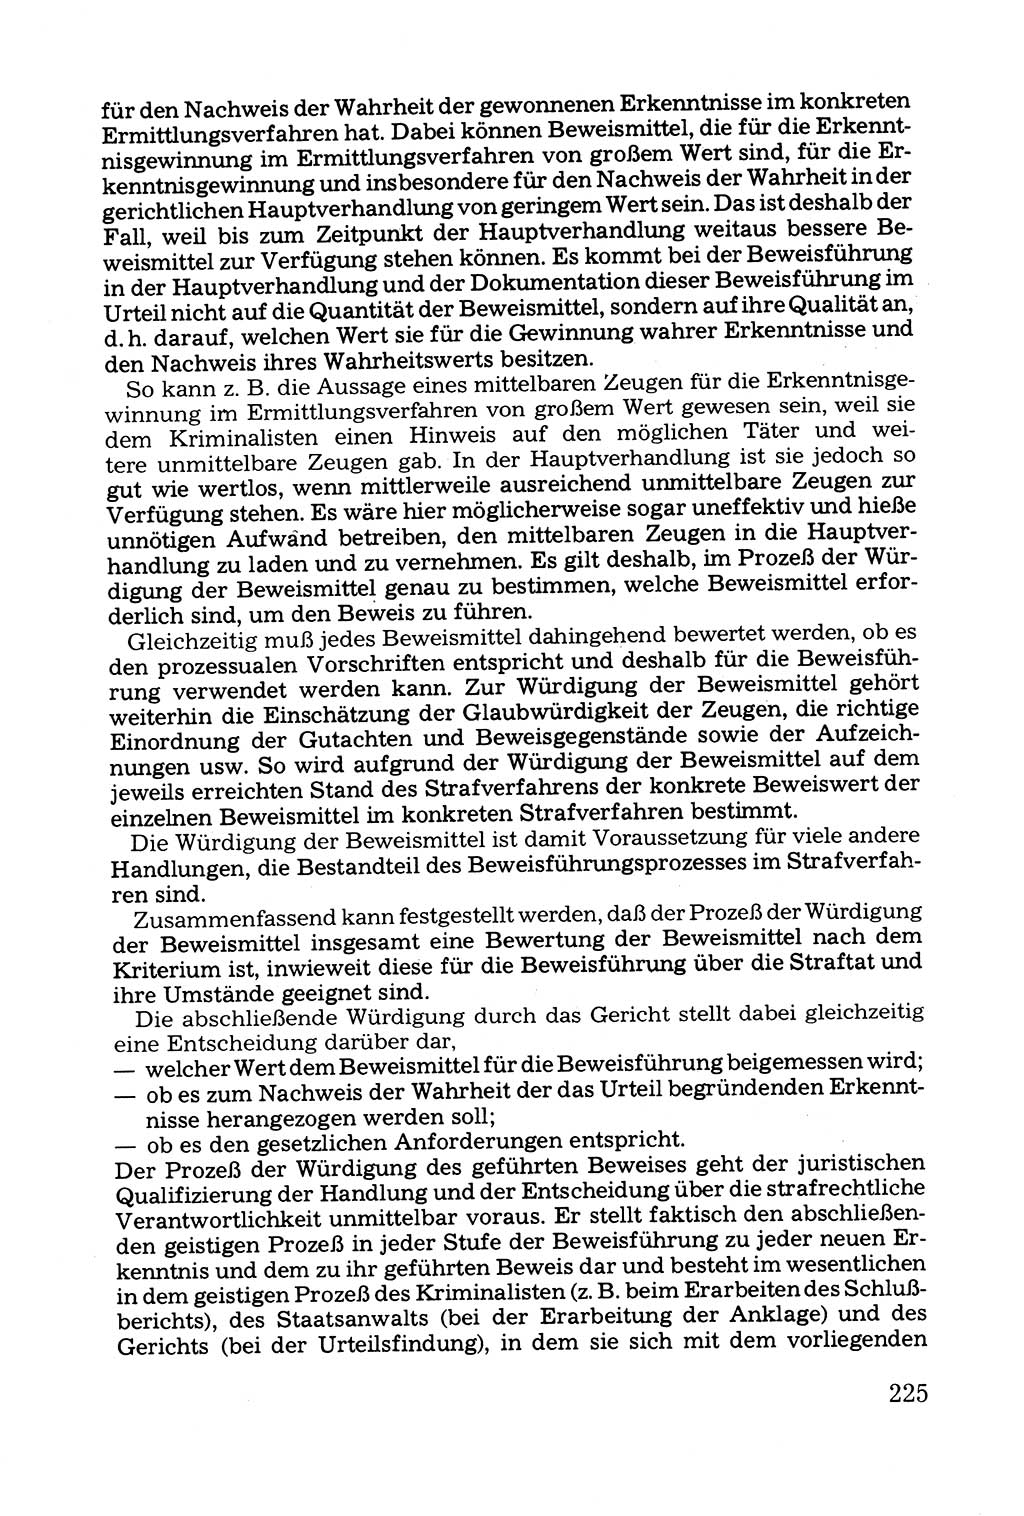 Grundfragen der Beweisführung im Ermittlungsverfahren [Deutsche Demokratische Republik (DDR)] 1980, Seite 225 (Bws.-Fhrg. EV DDR 1980, S. 225)